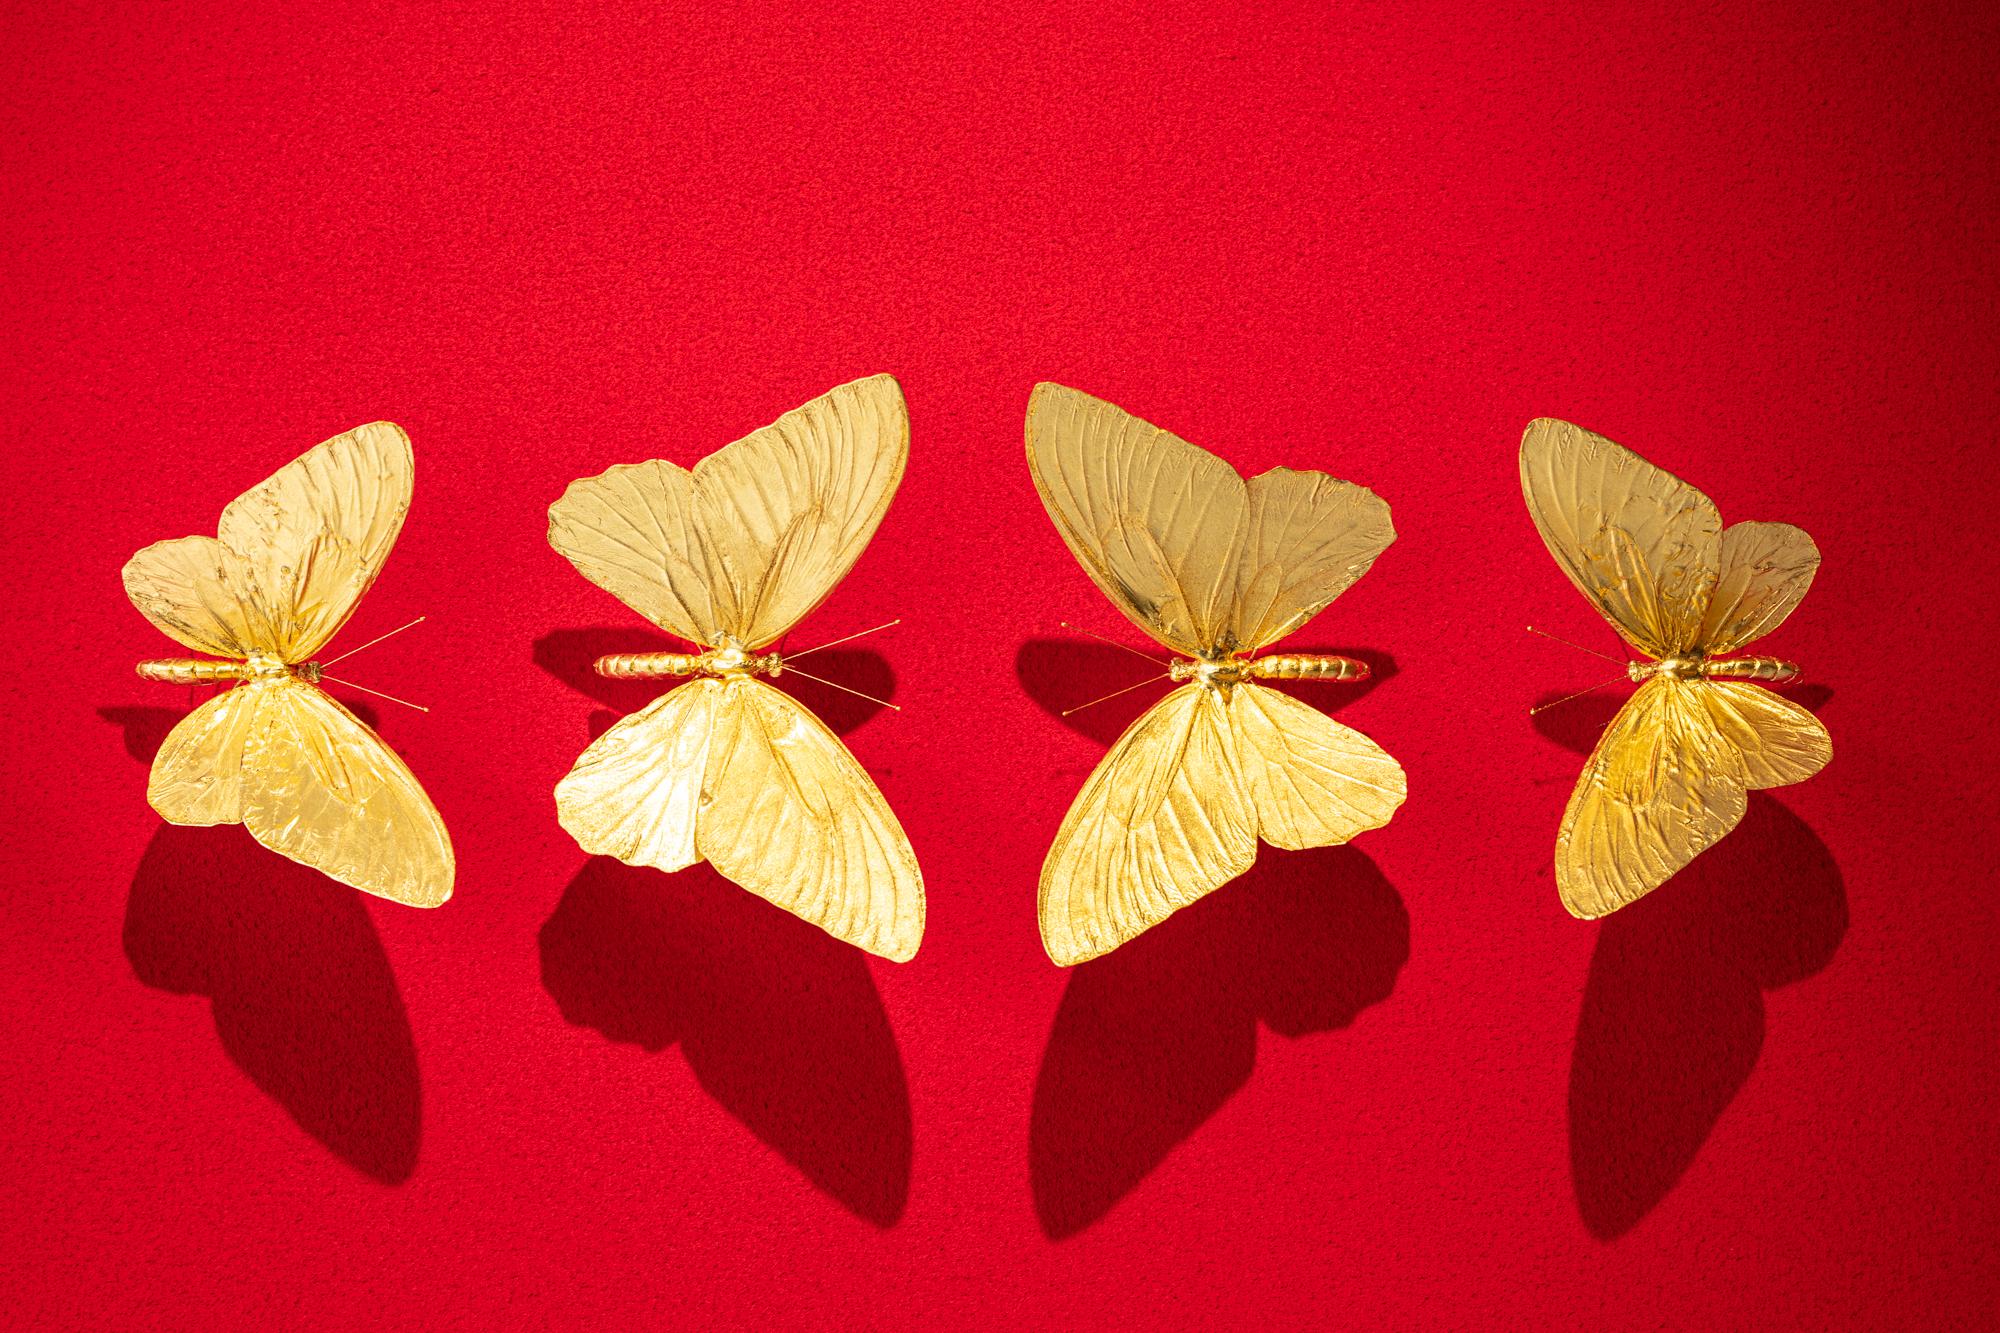 Metamorphosis Red II - 21st Century, Contemporary Figurative, Golden Butterflies 3